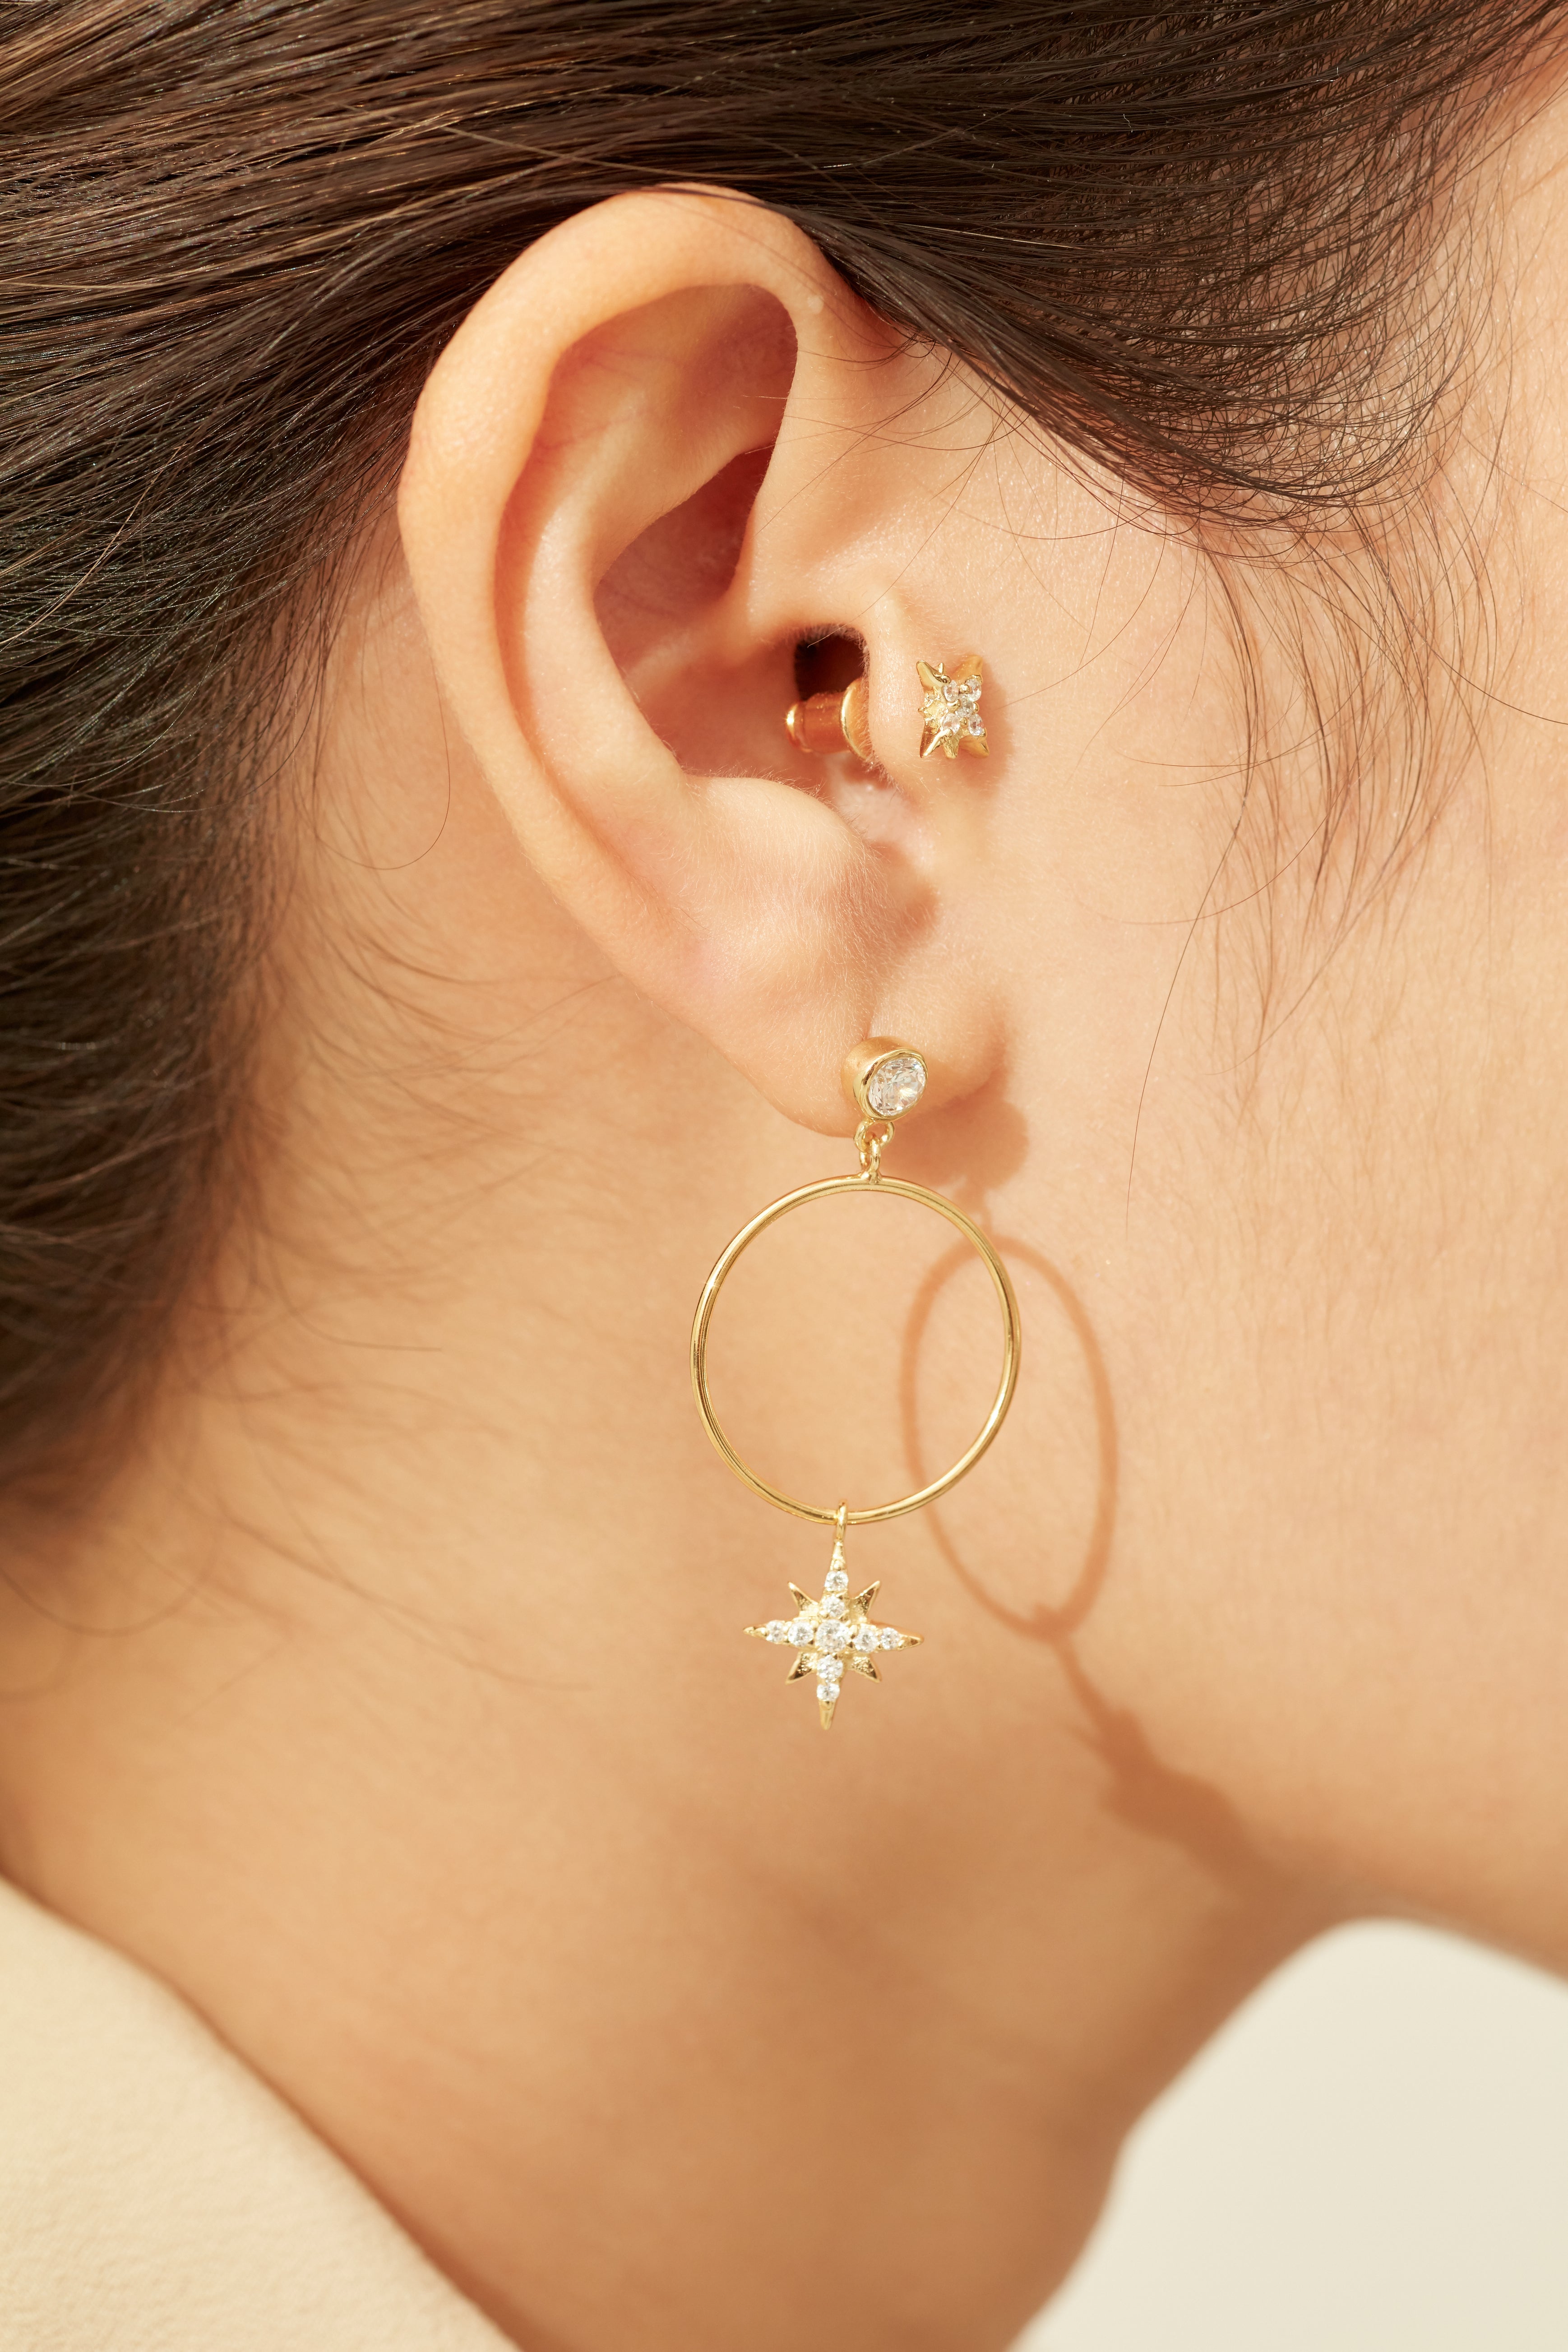 Celestial Stud Earrings - Gold